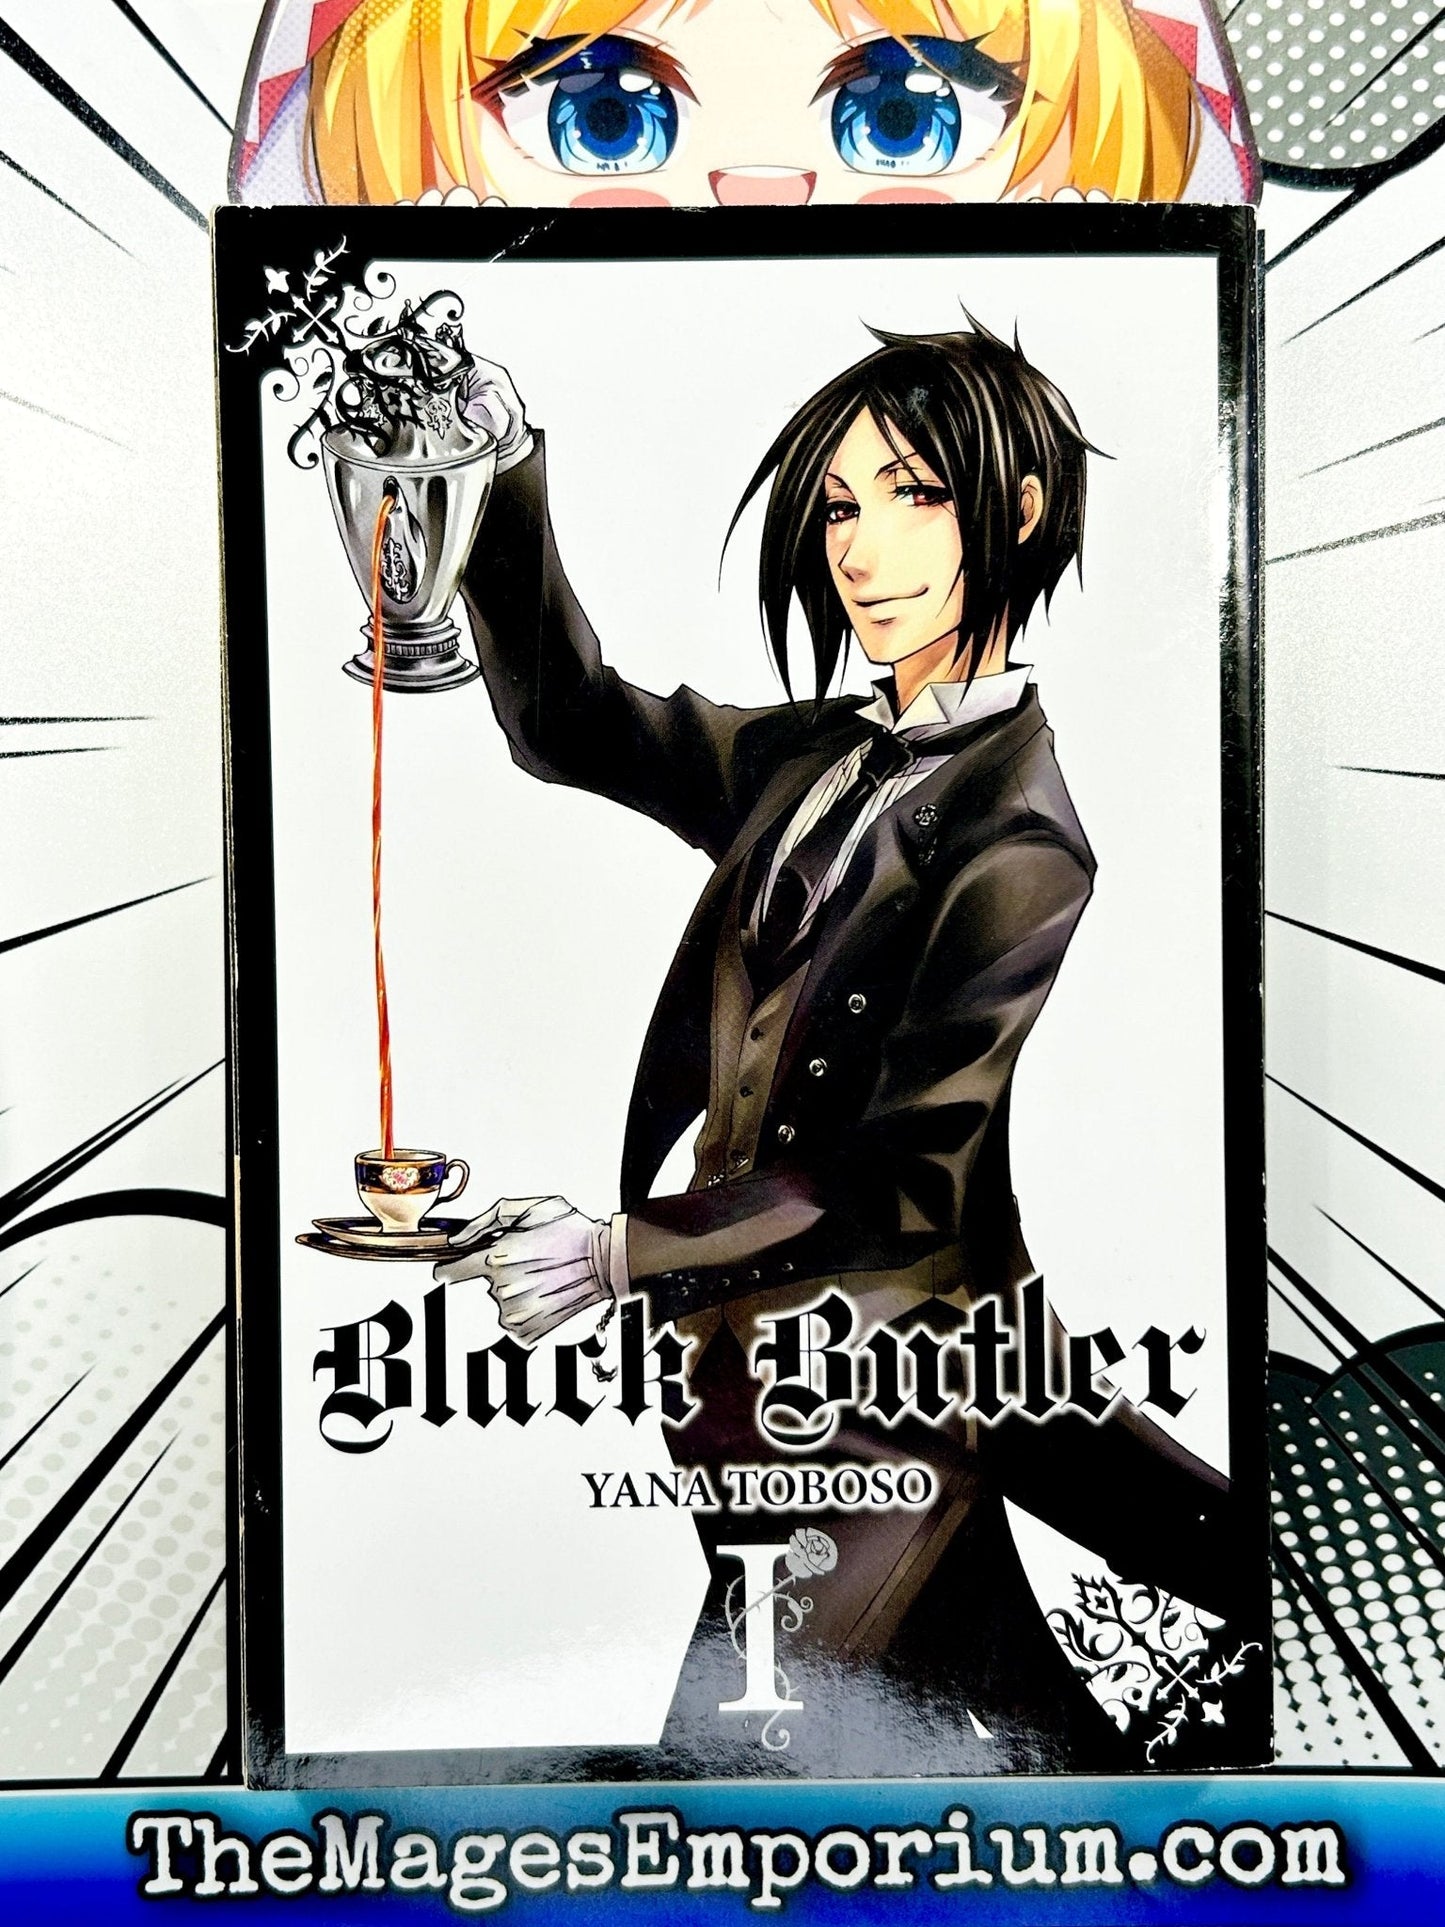 Black Butler Vol 1